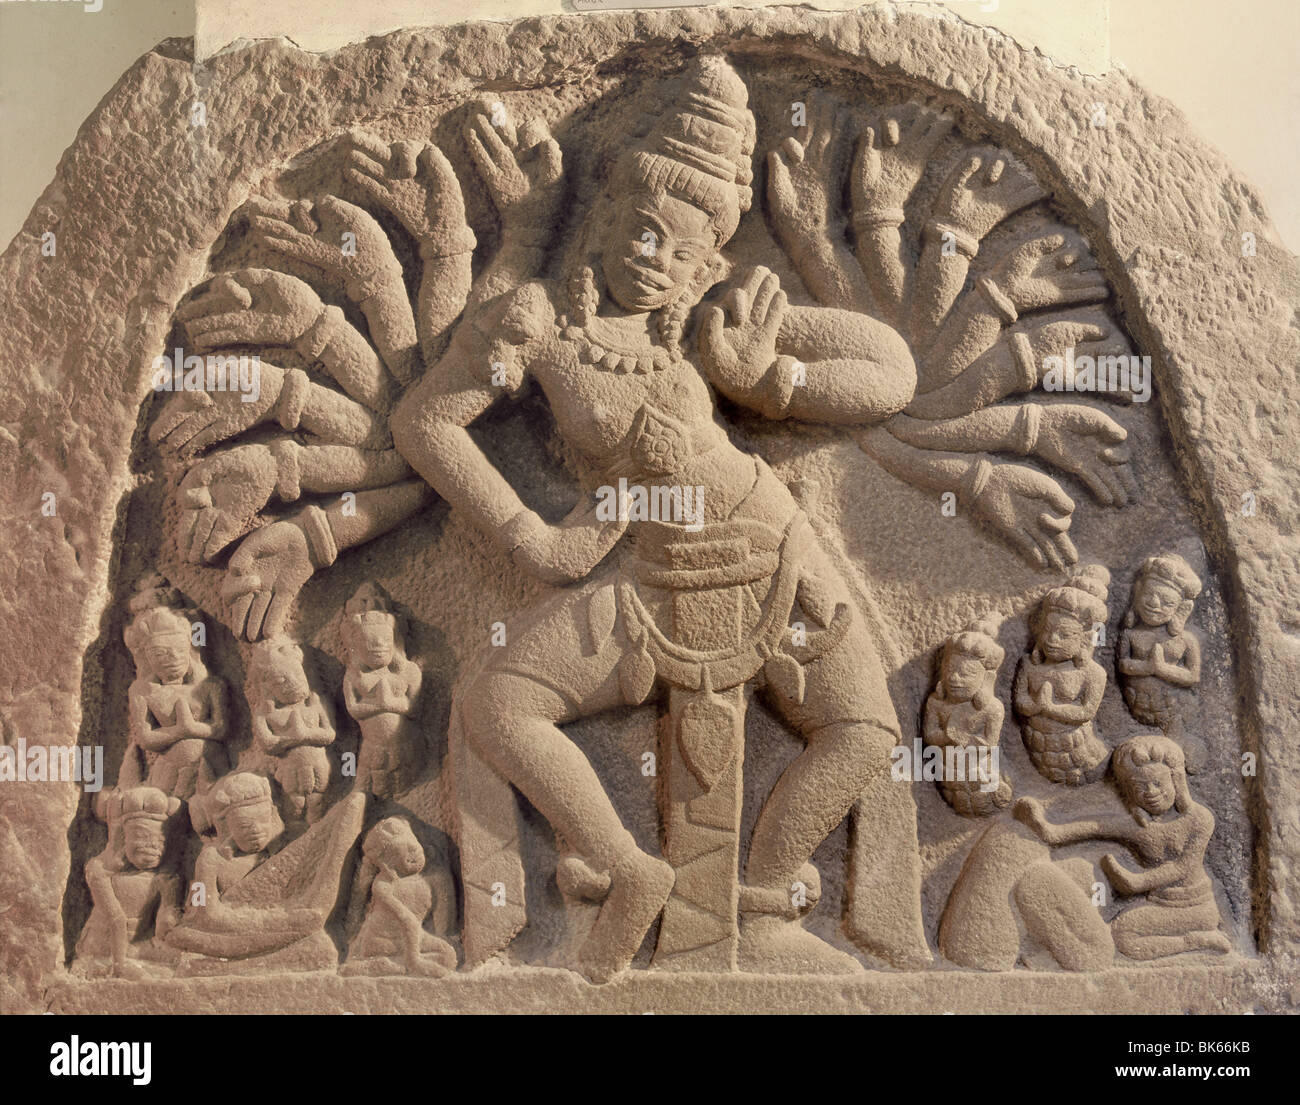 Dancing 16-armati Shiva, Cham arte dal decimo secolo, Cham Museum, Da Nang, Vietnam, Indocina, Asia sud-orientale, Asia Foto Stock